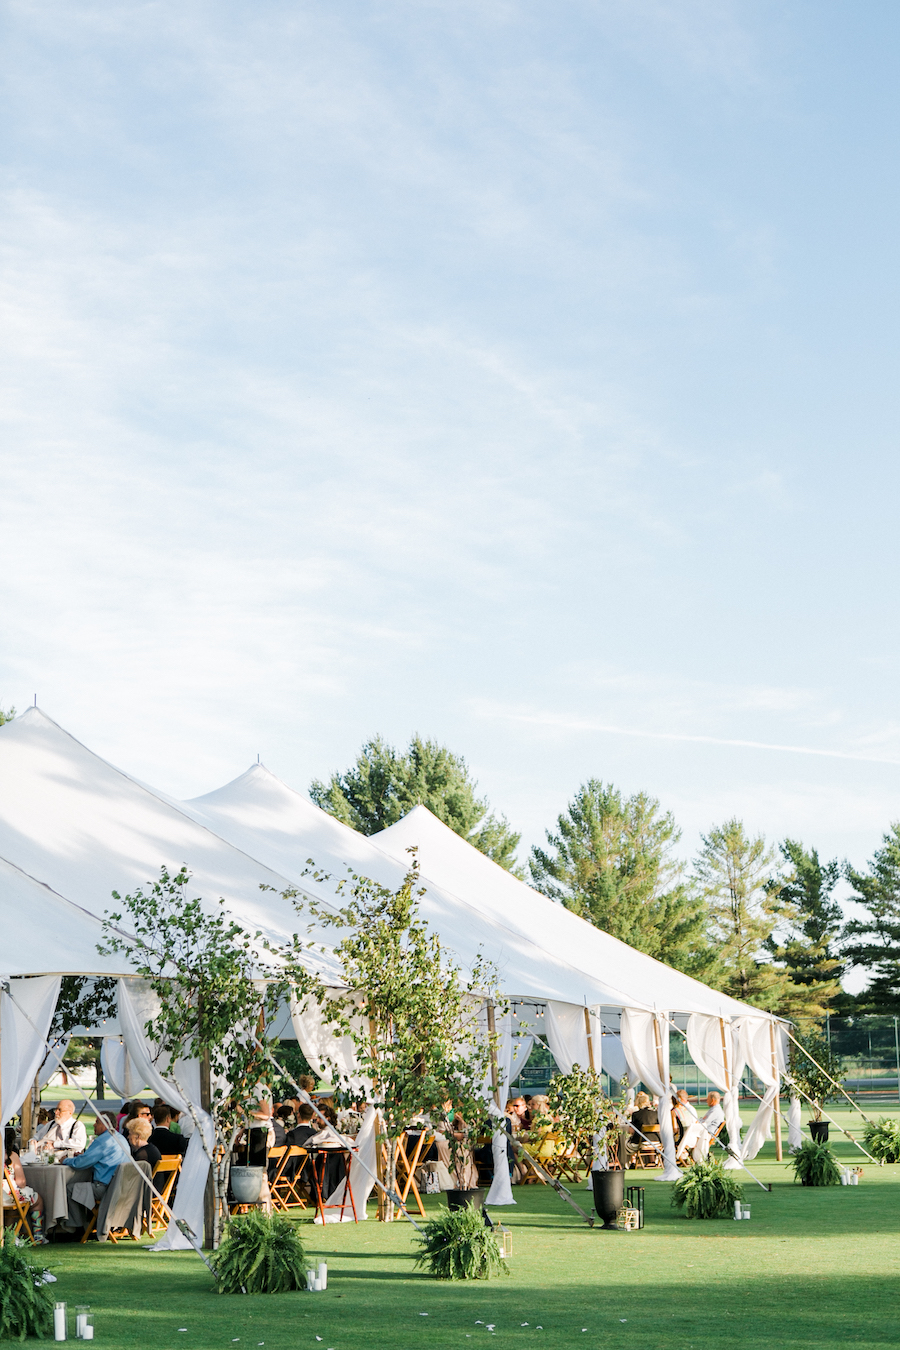 A garden themed outdoor tented wedding